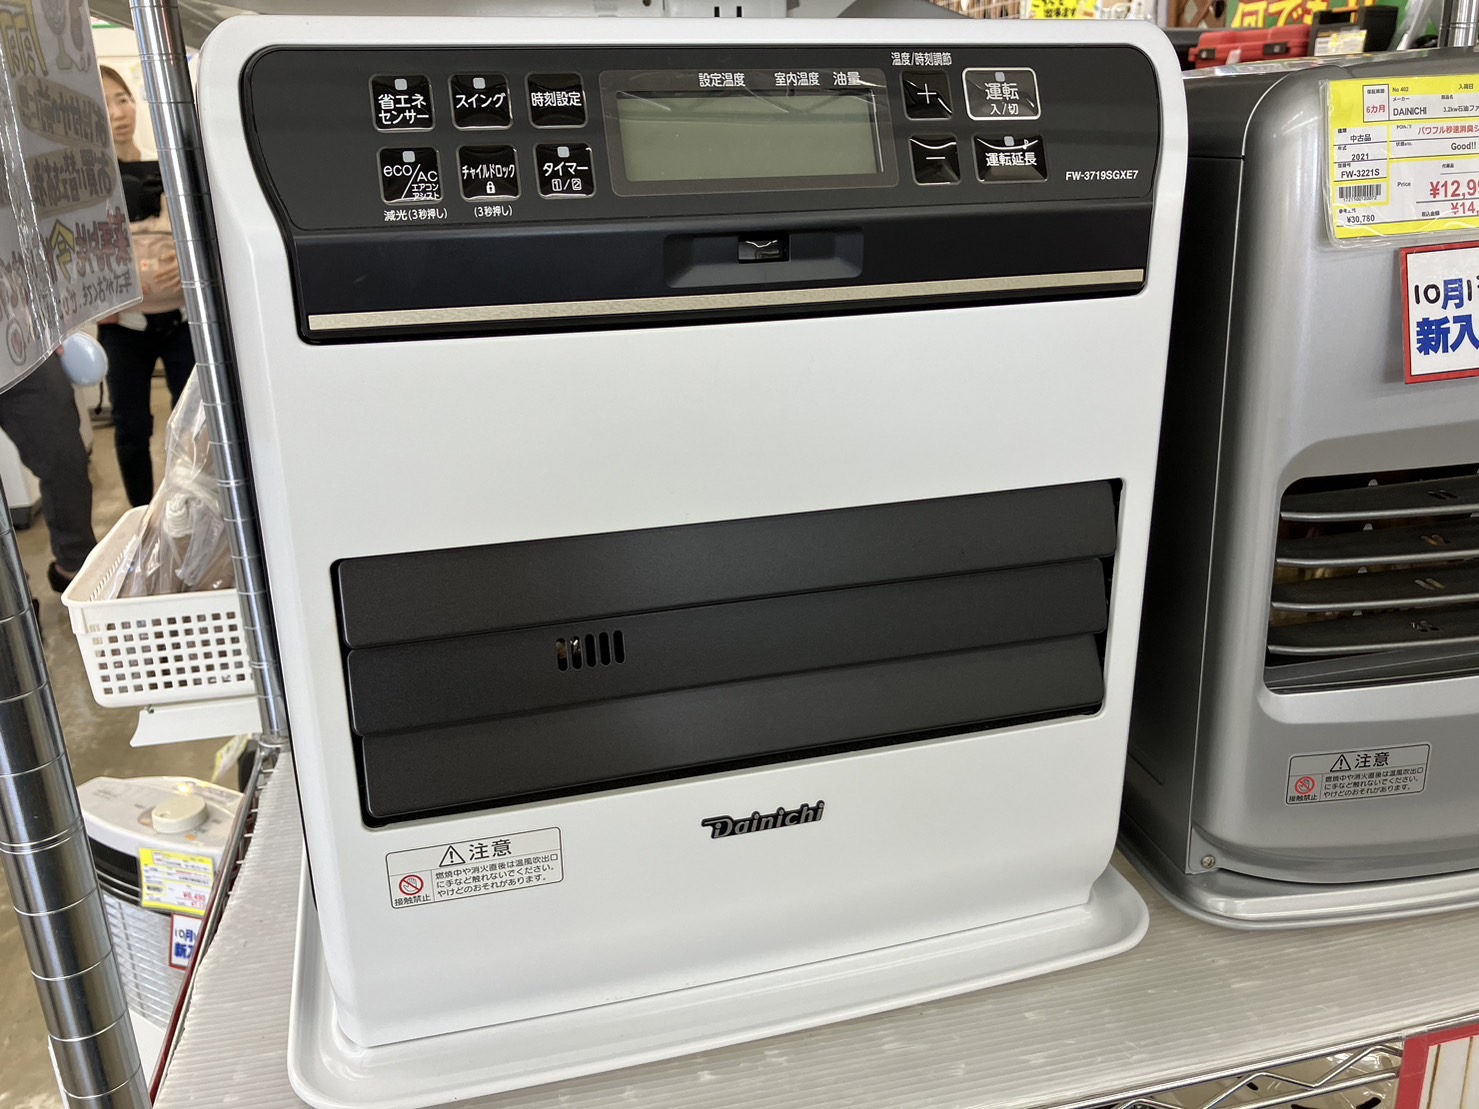 【dainichi ダイニチ 石油ファンヒーター FW-3719SGXE7 2019年式 ストーブ】を買取いたしました！ - リサイクルマートは現在冷蔵庫の買取、家具の買取強化中です！お気軽にお問い合わせください。